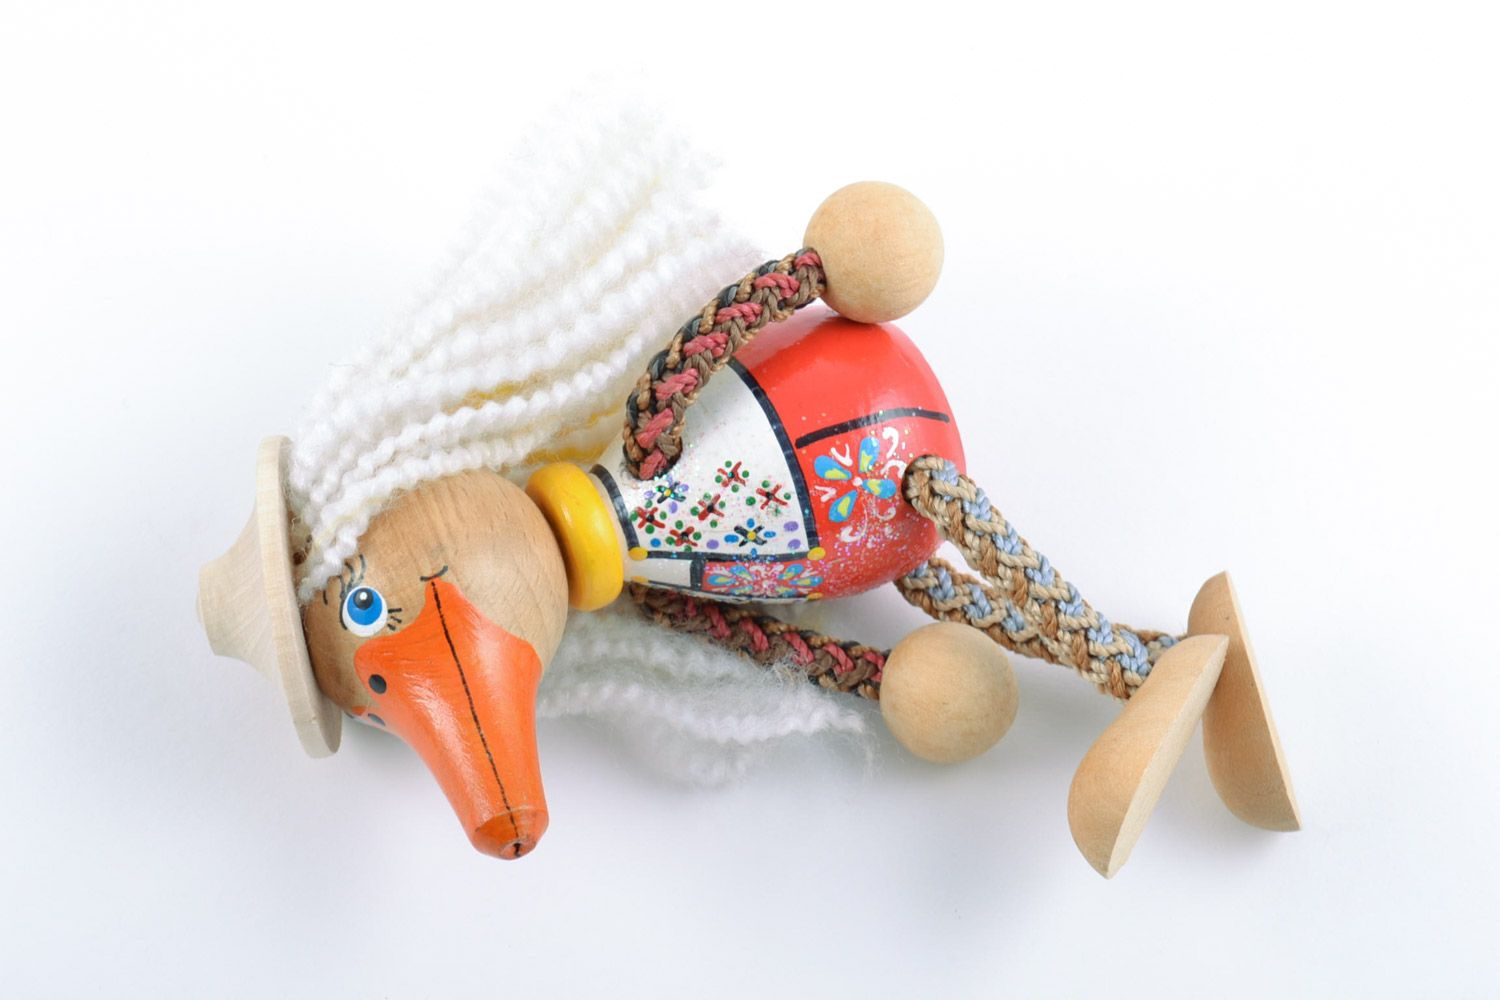 Оригинальная деревянная игрушка Утка ручной работы расписанная эко-красками фото 5